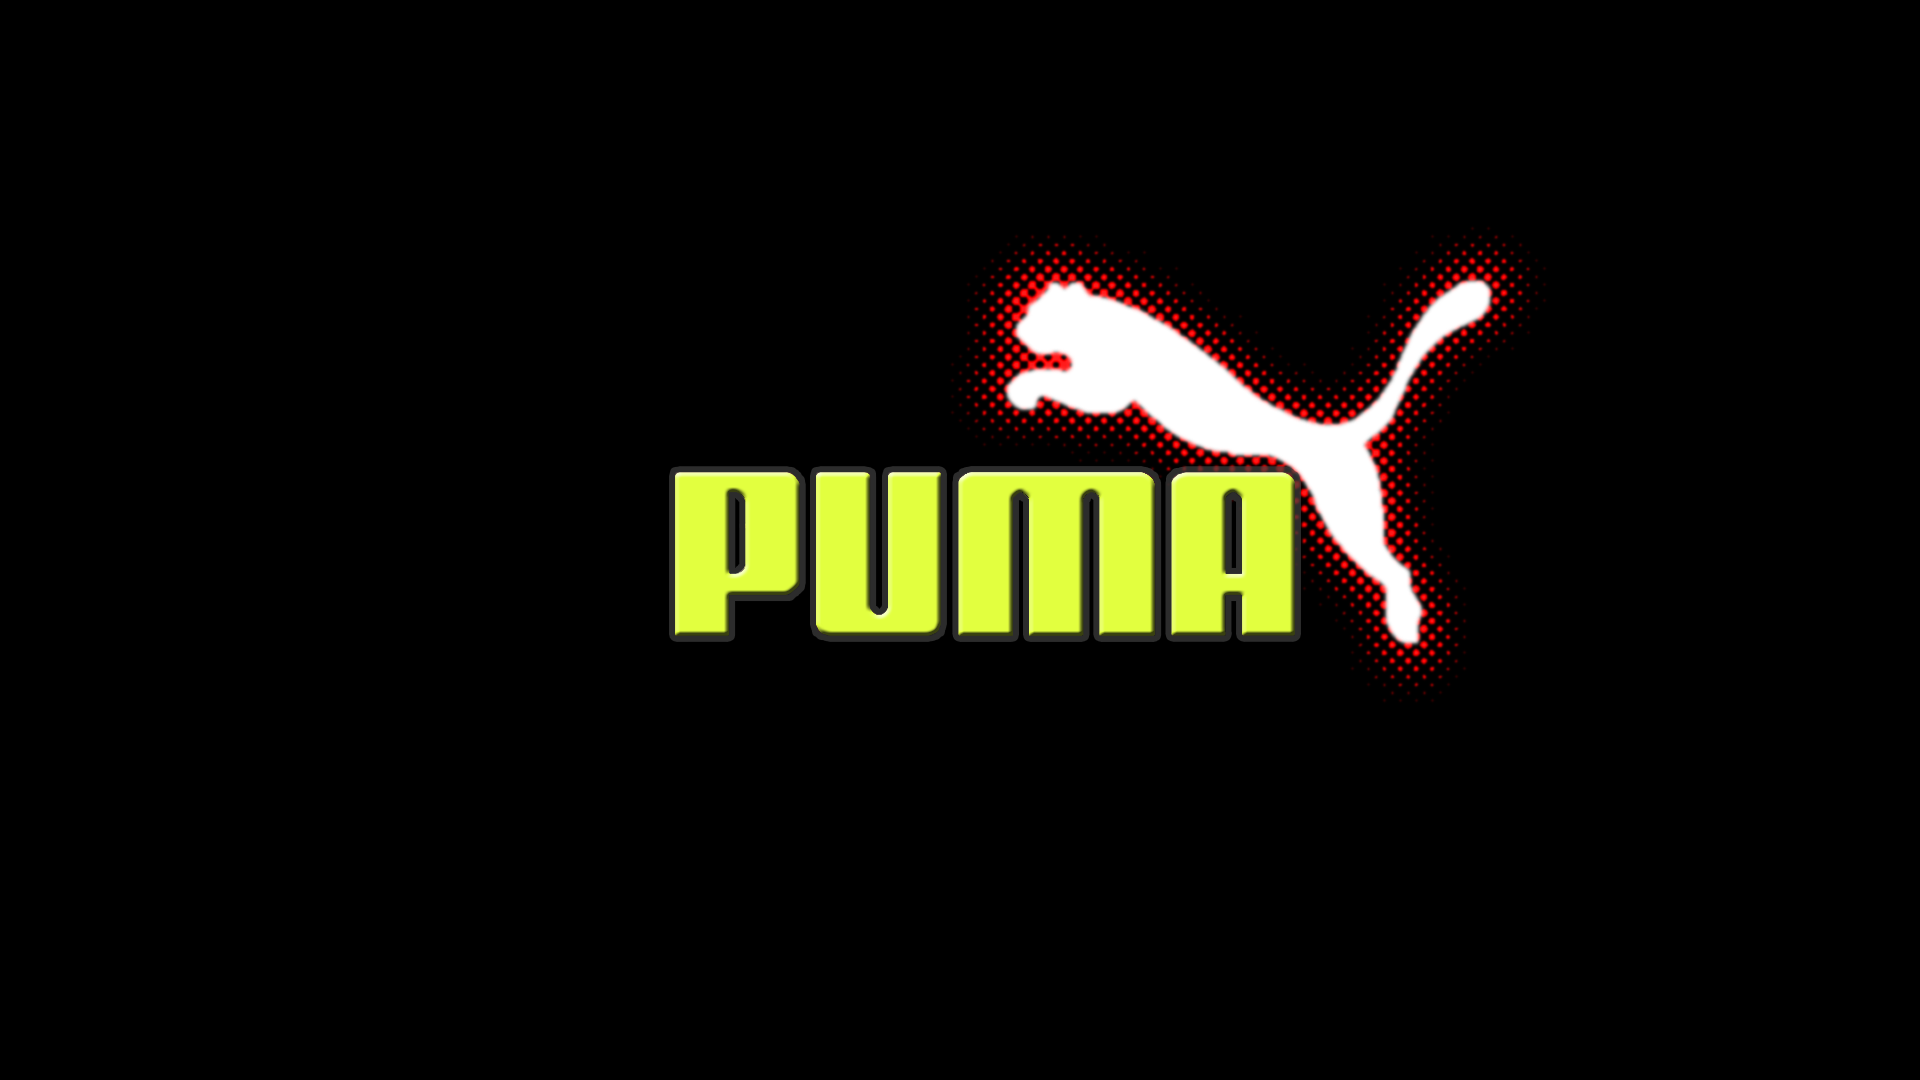 abstract puma logo wallpaper